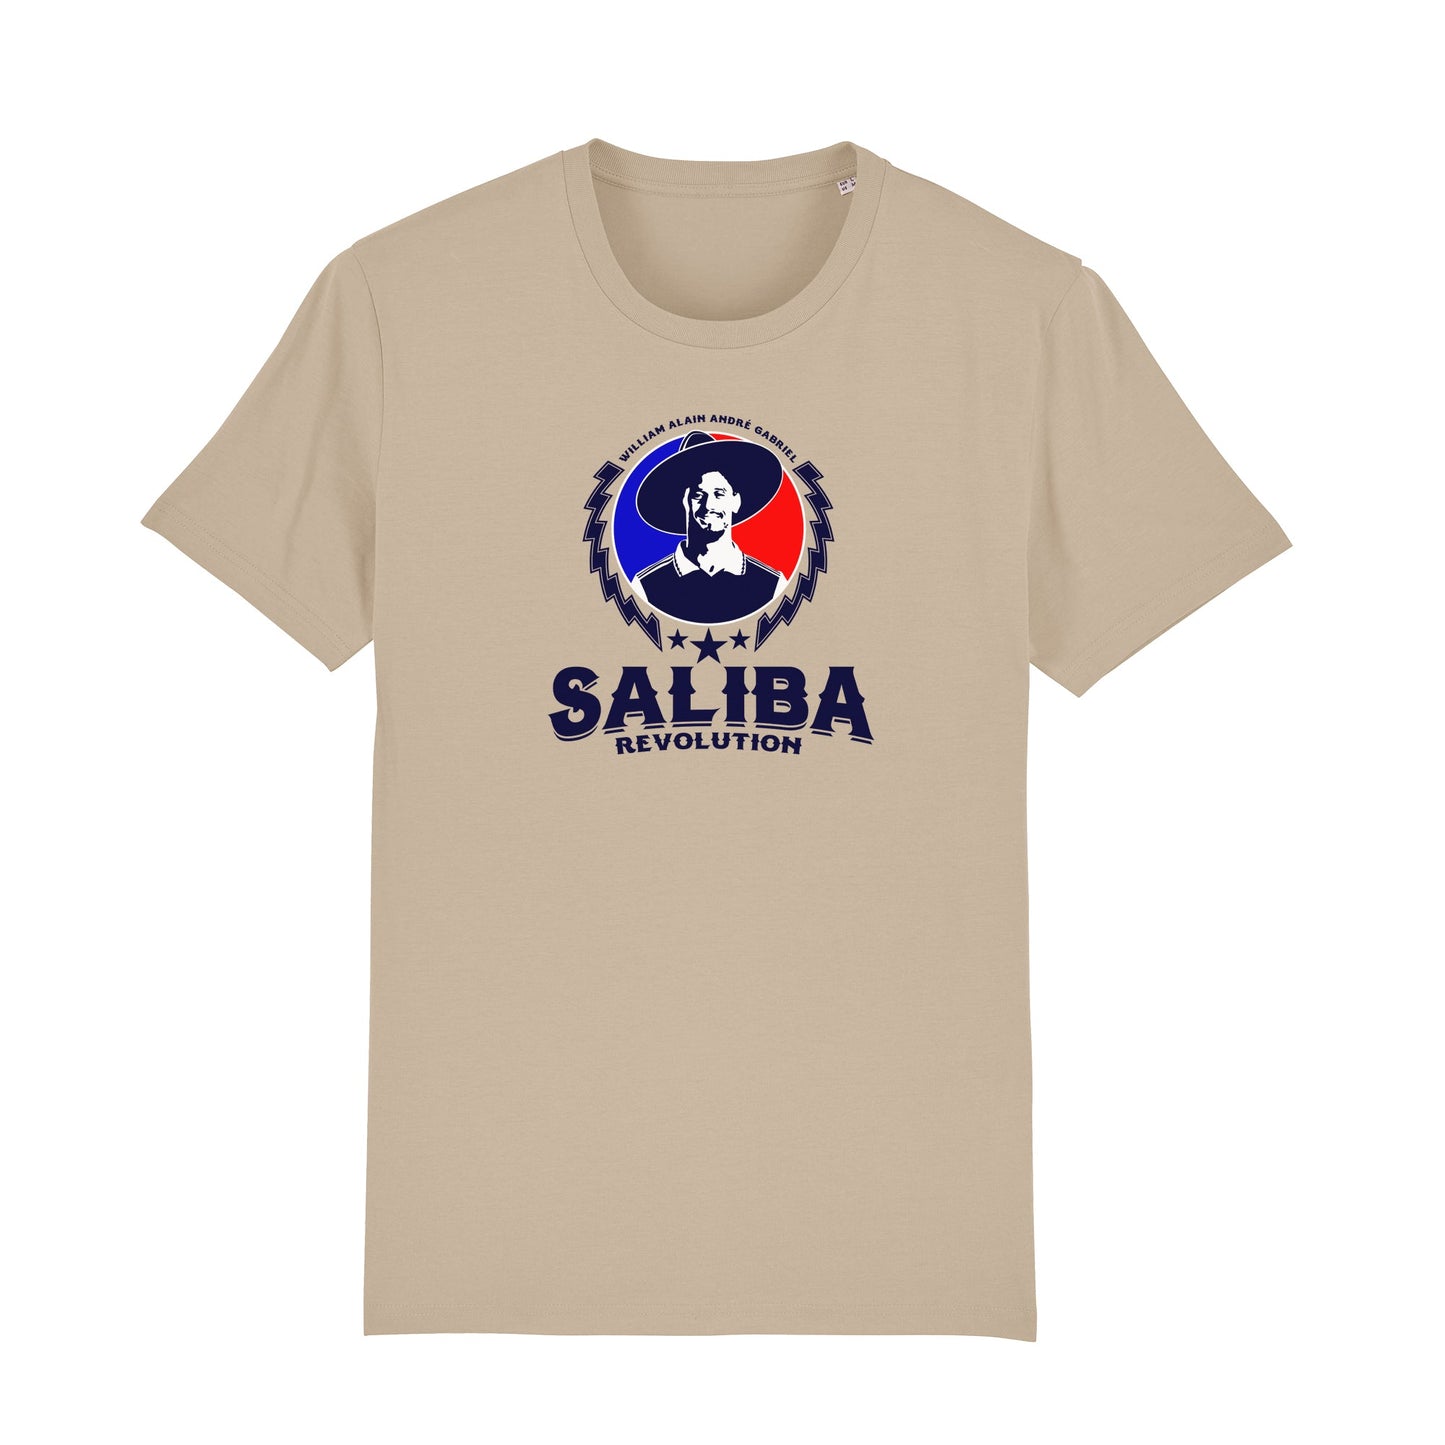 Saliba Revolution Tee